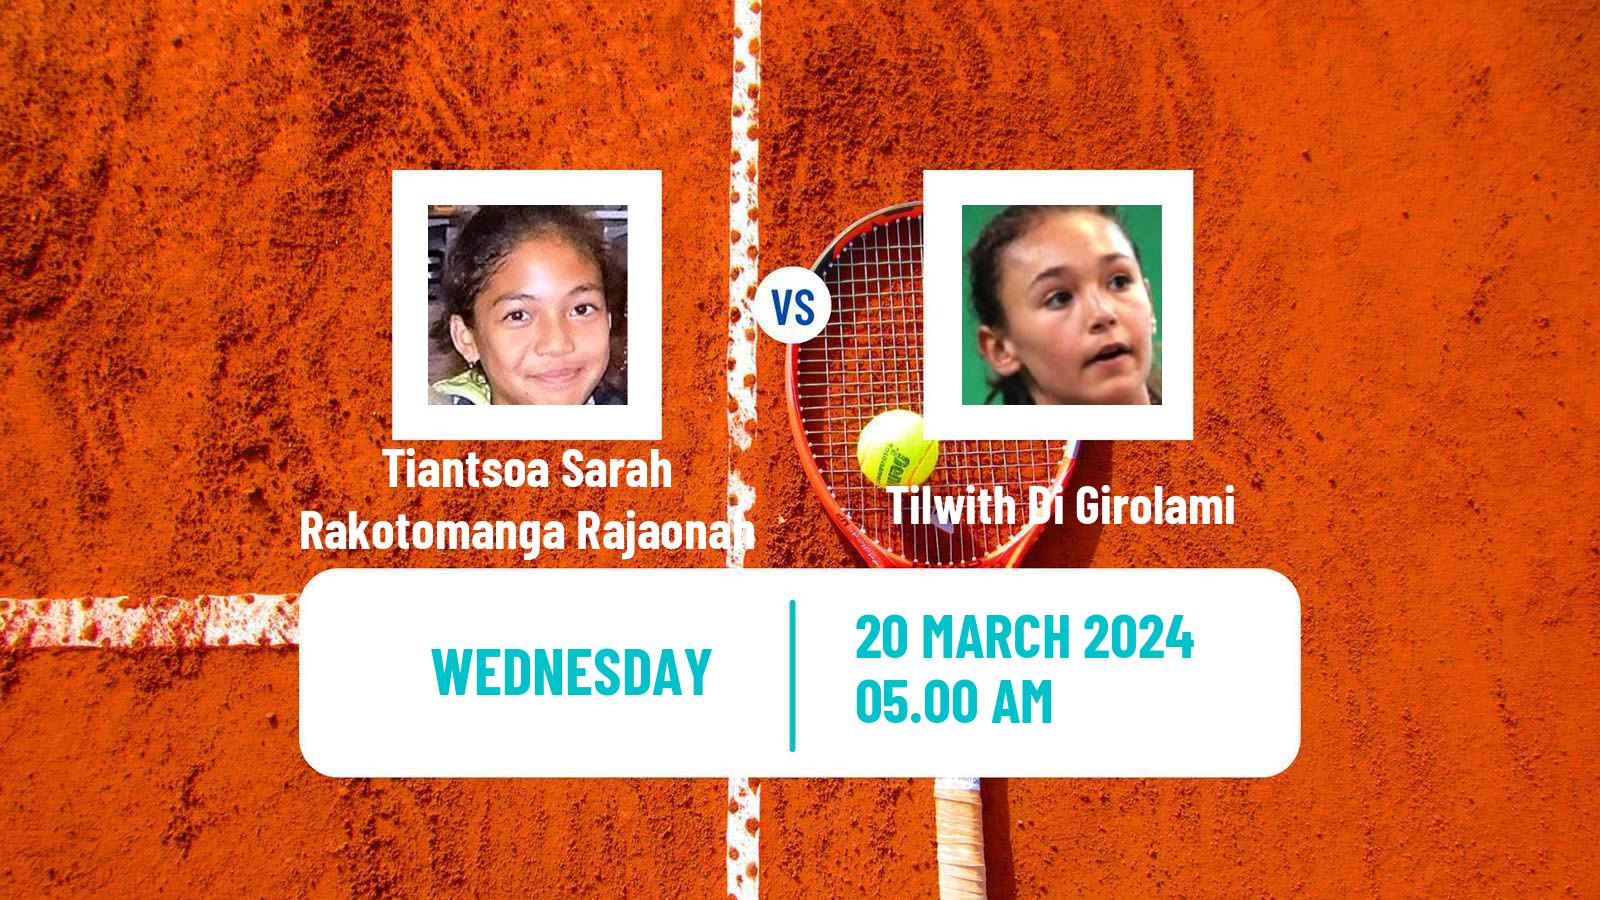 Tennis ITF W15 Le Havre Women Tiantsoa Sarah Rakotomanga Rajaonah - Tilwith Di Girolami